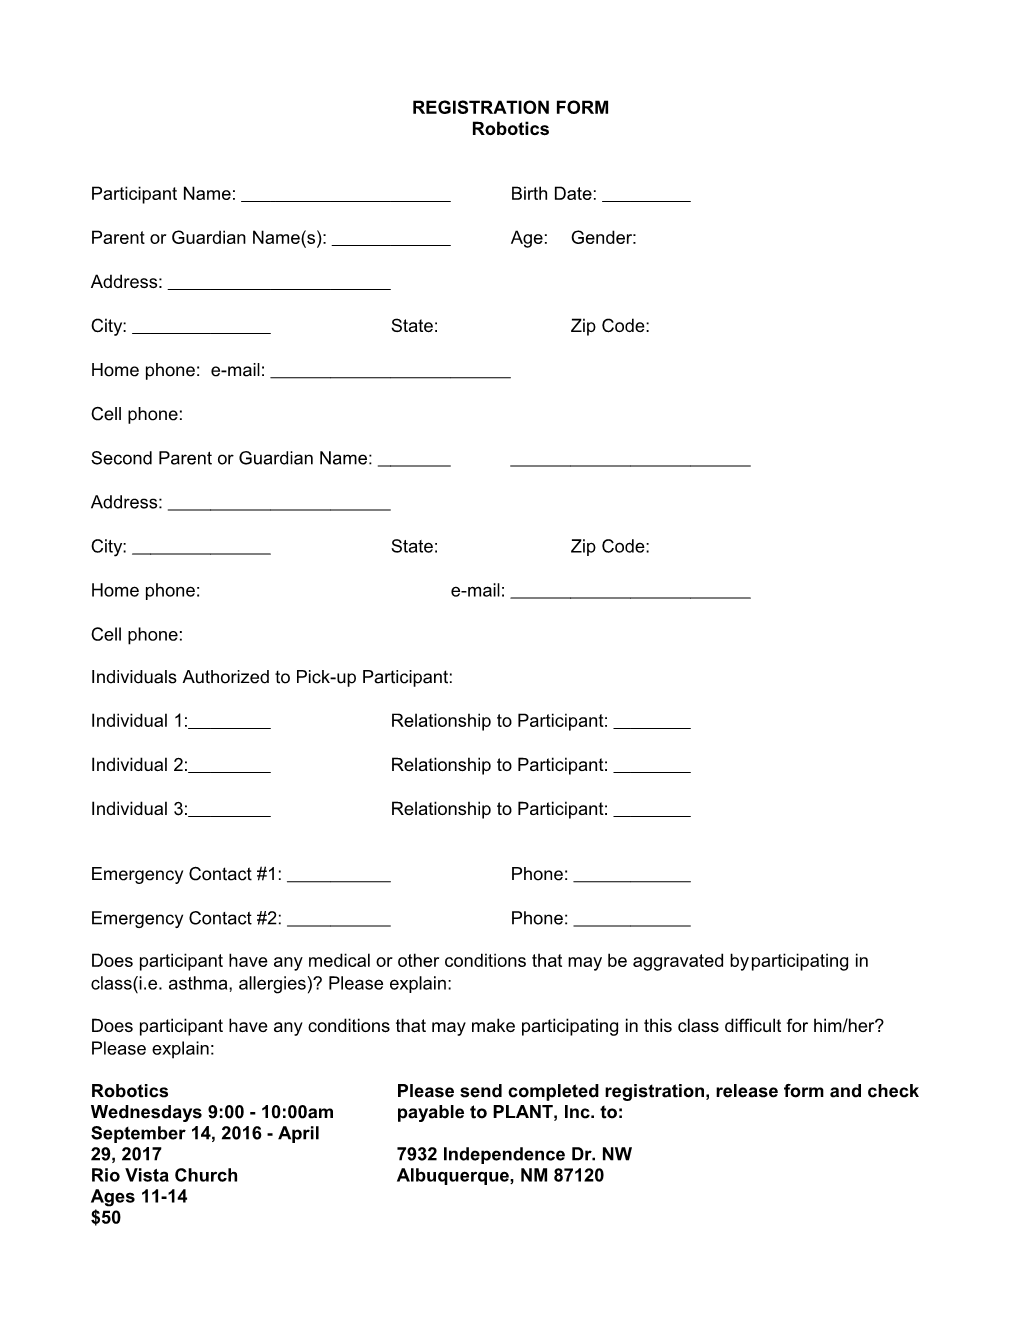 Registration Form s5